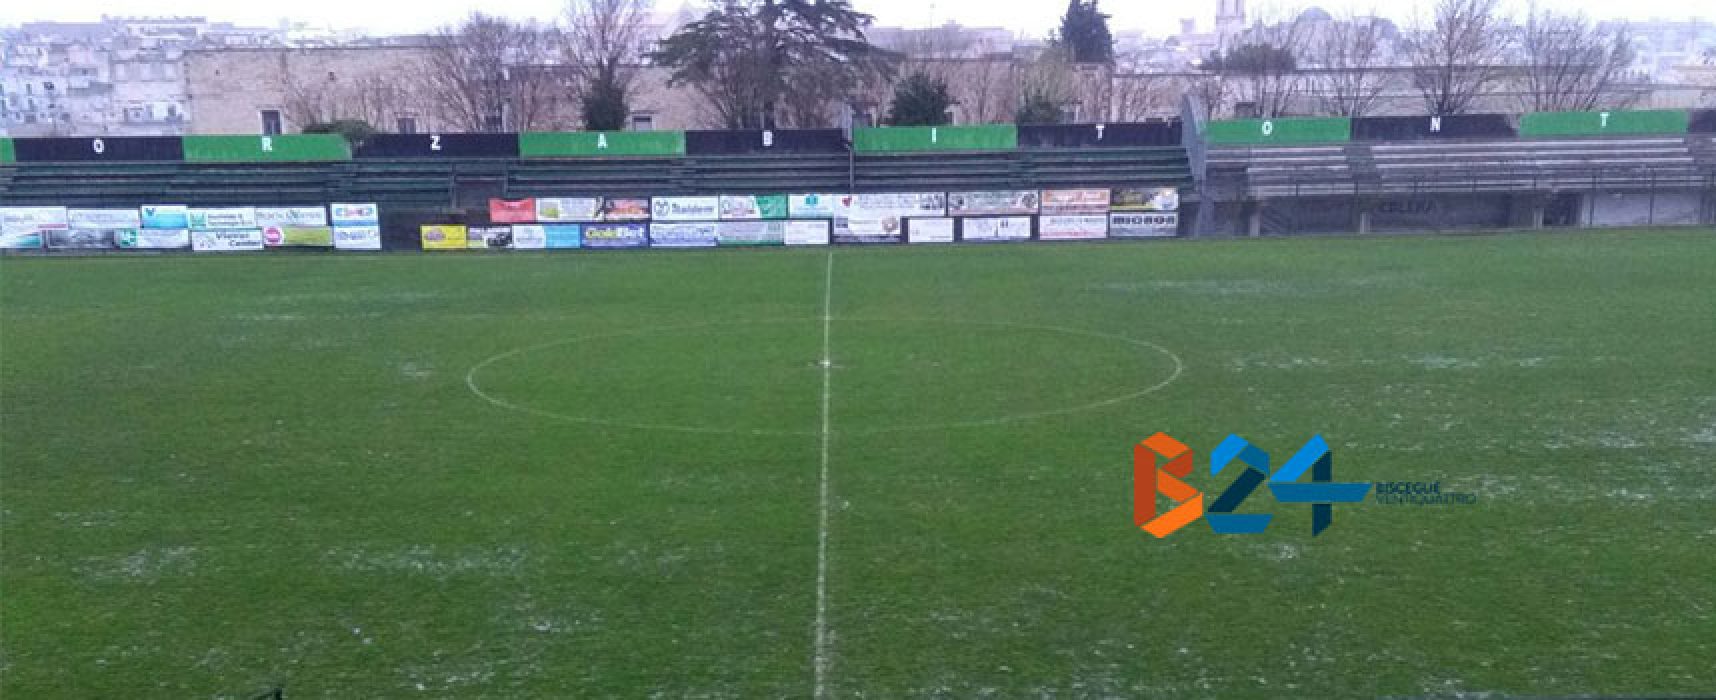 Omnia Bitonto-Unione Calcio sospesa per impraticabilità del campo